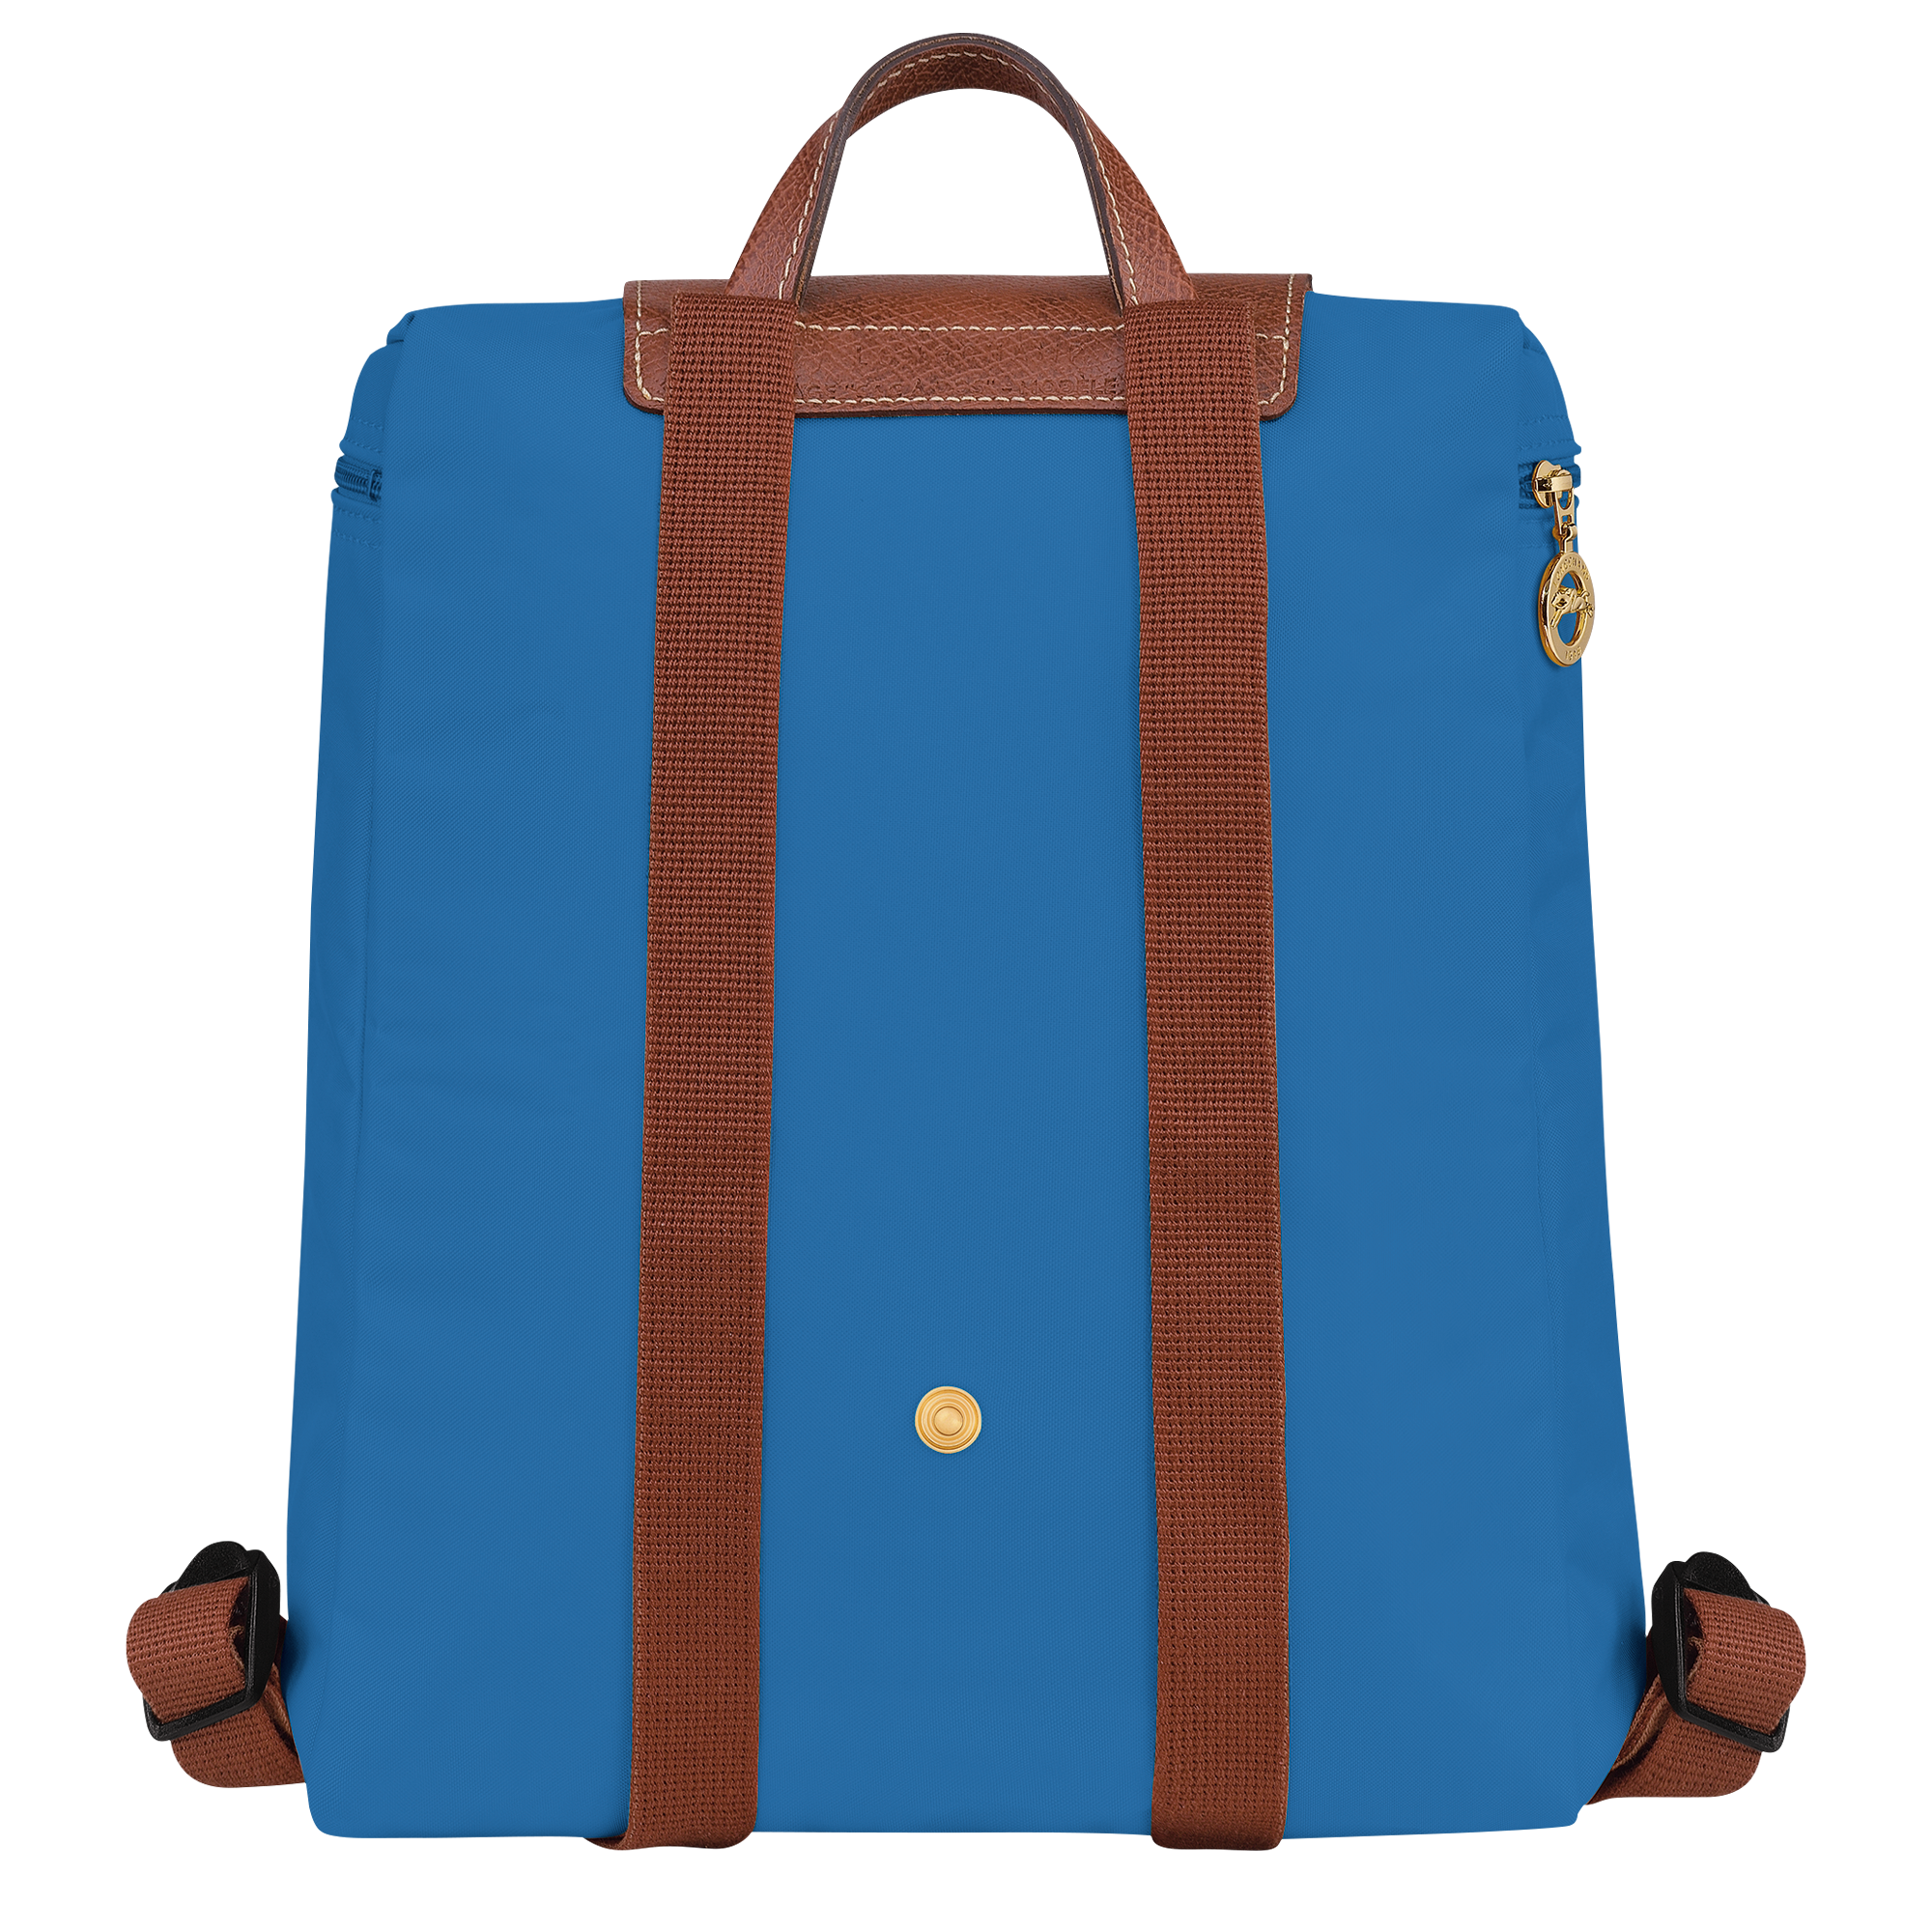 Le Pliage 原創系列 後背包, 鈷藍色